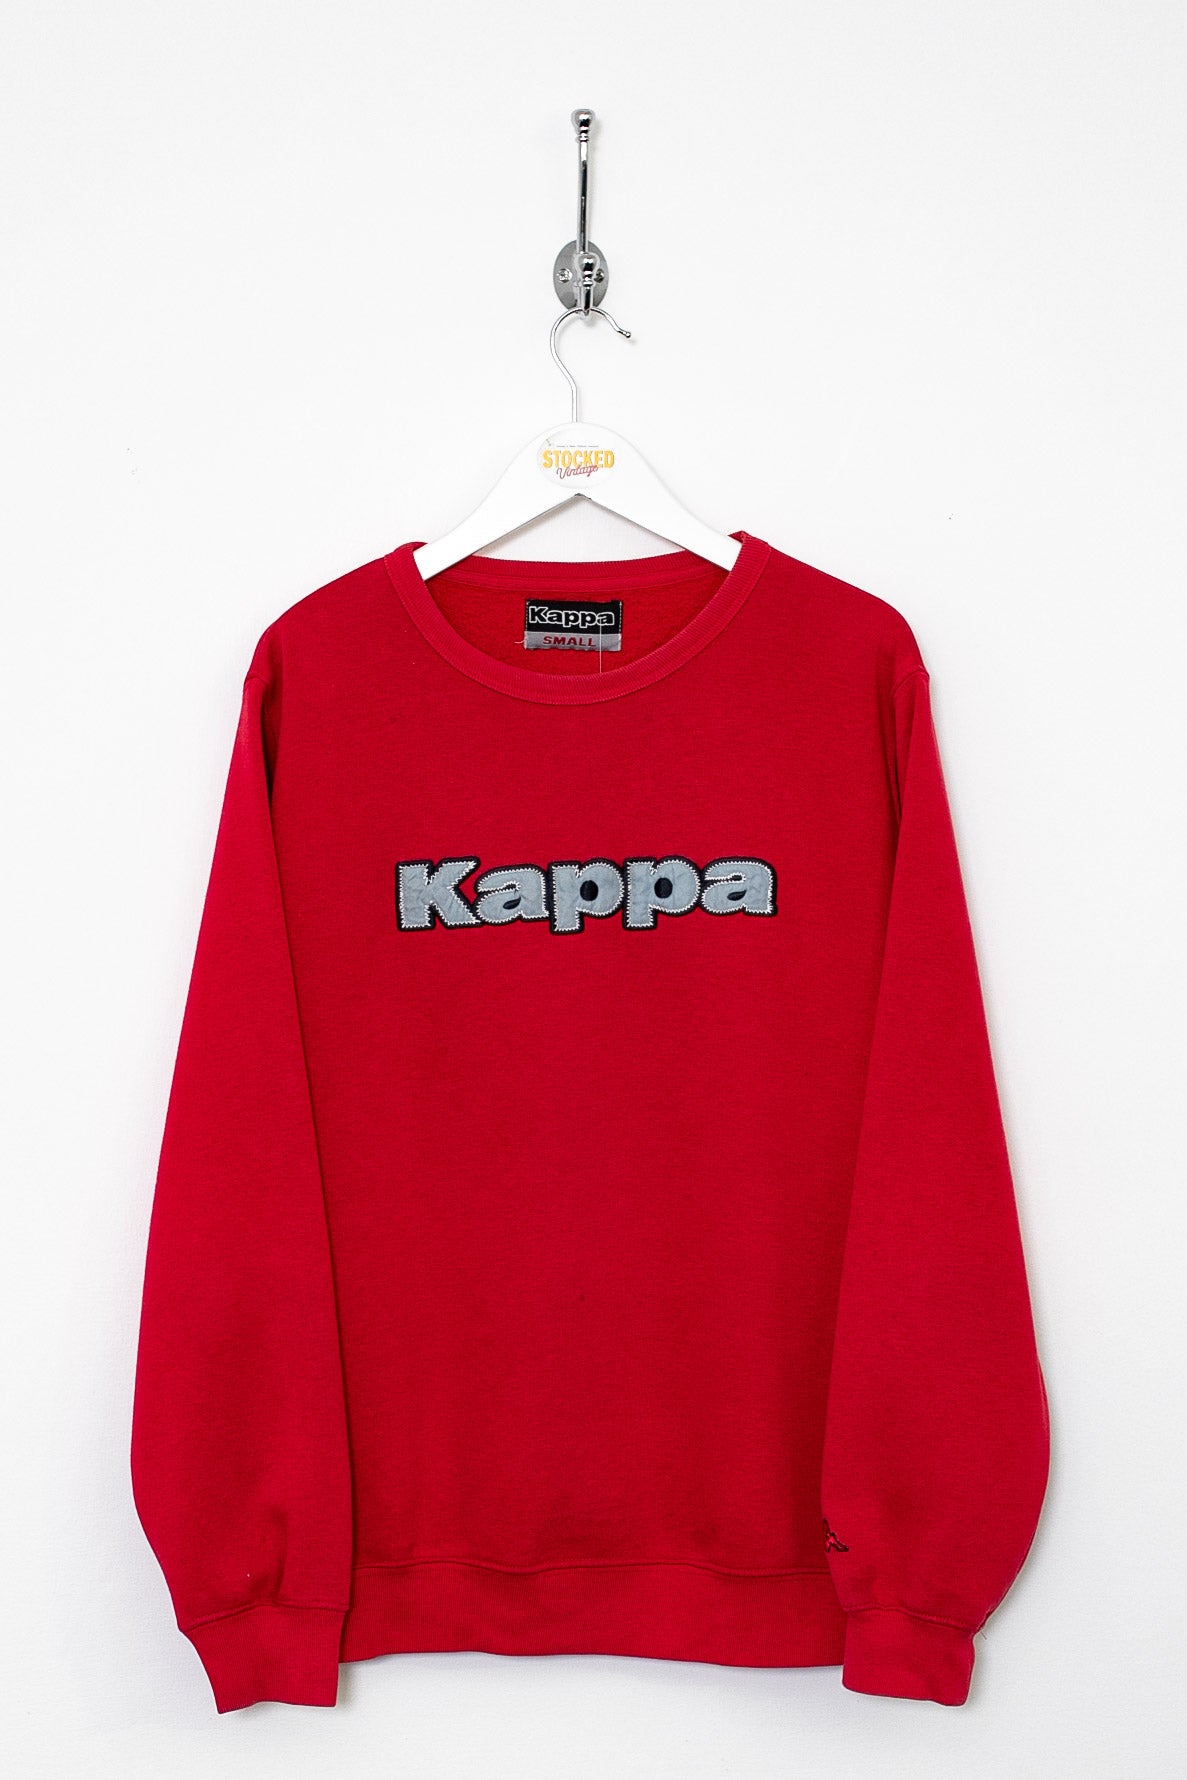 00s Kappa Sweatshirt (S)